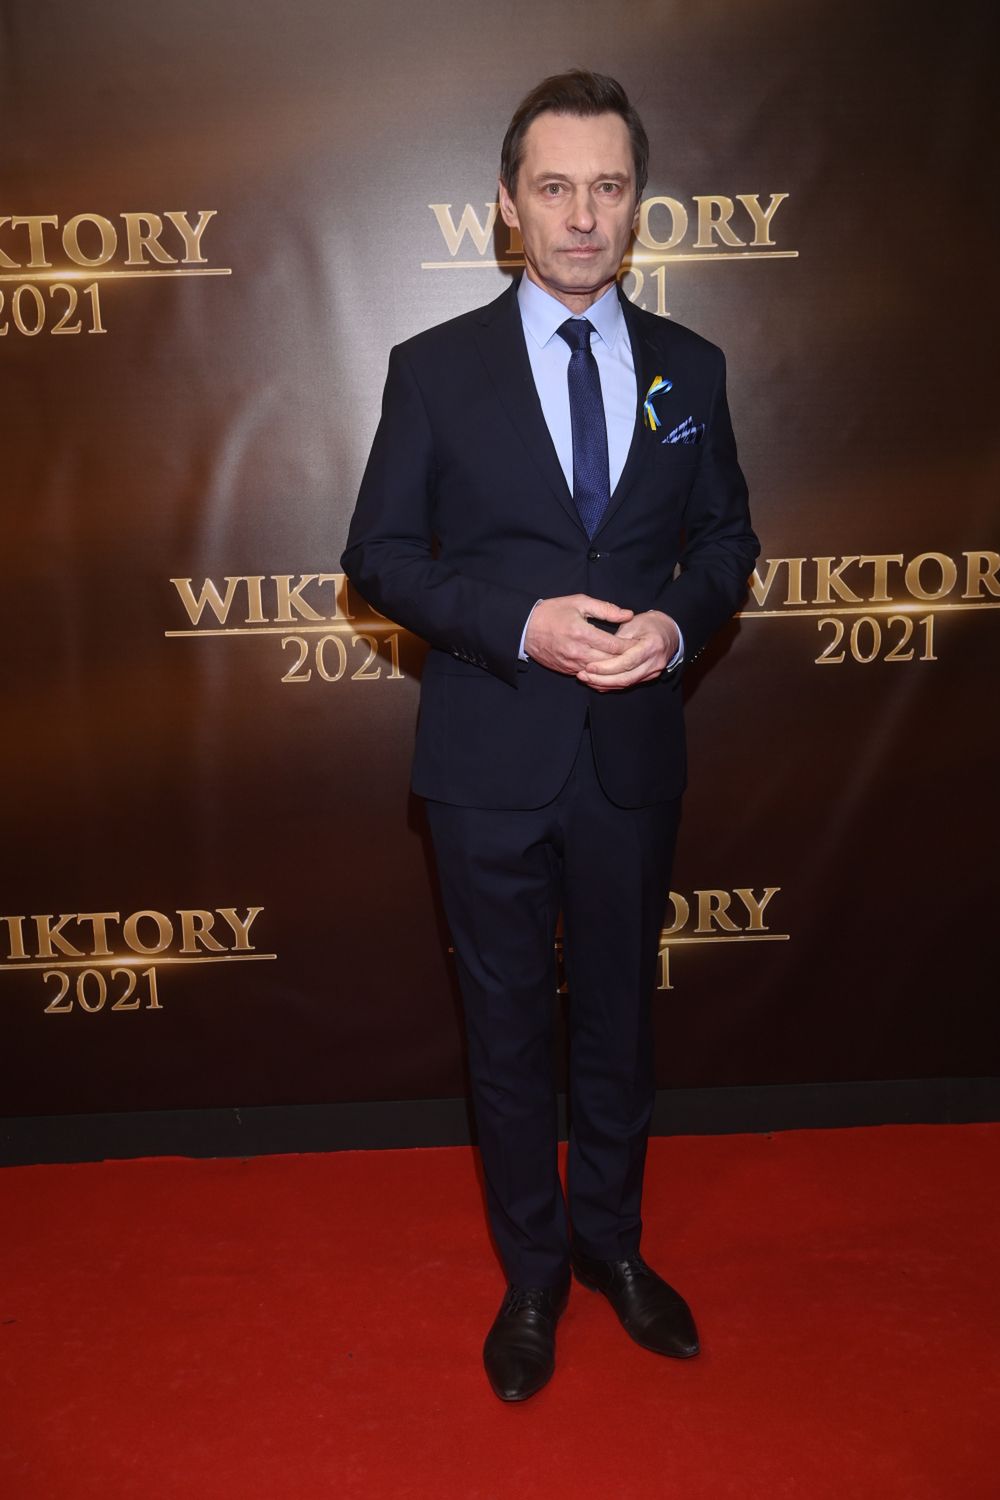 Krzysztof Ziemiec – Wiktory 2021